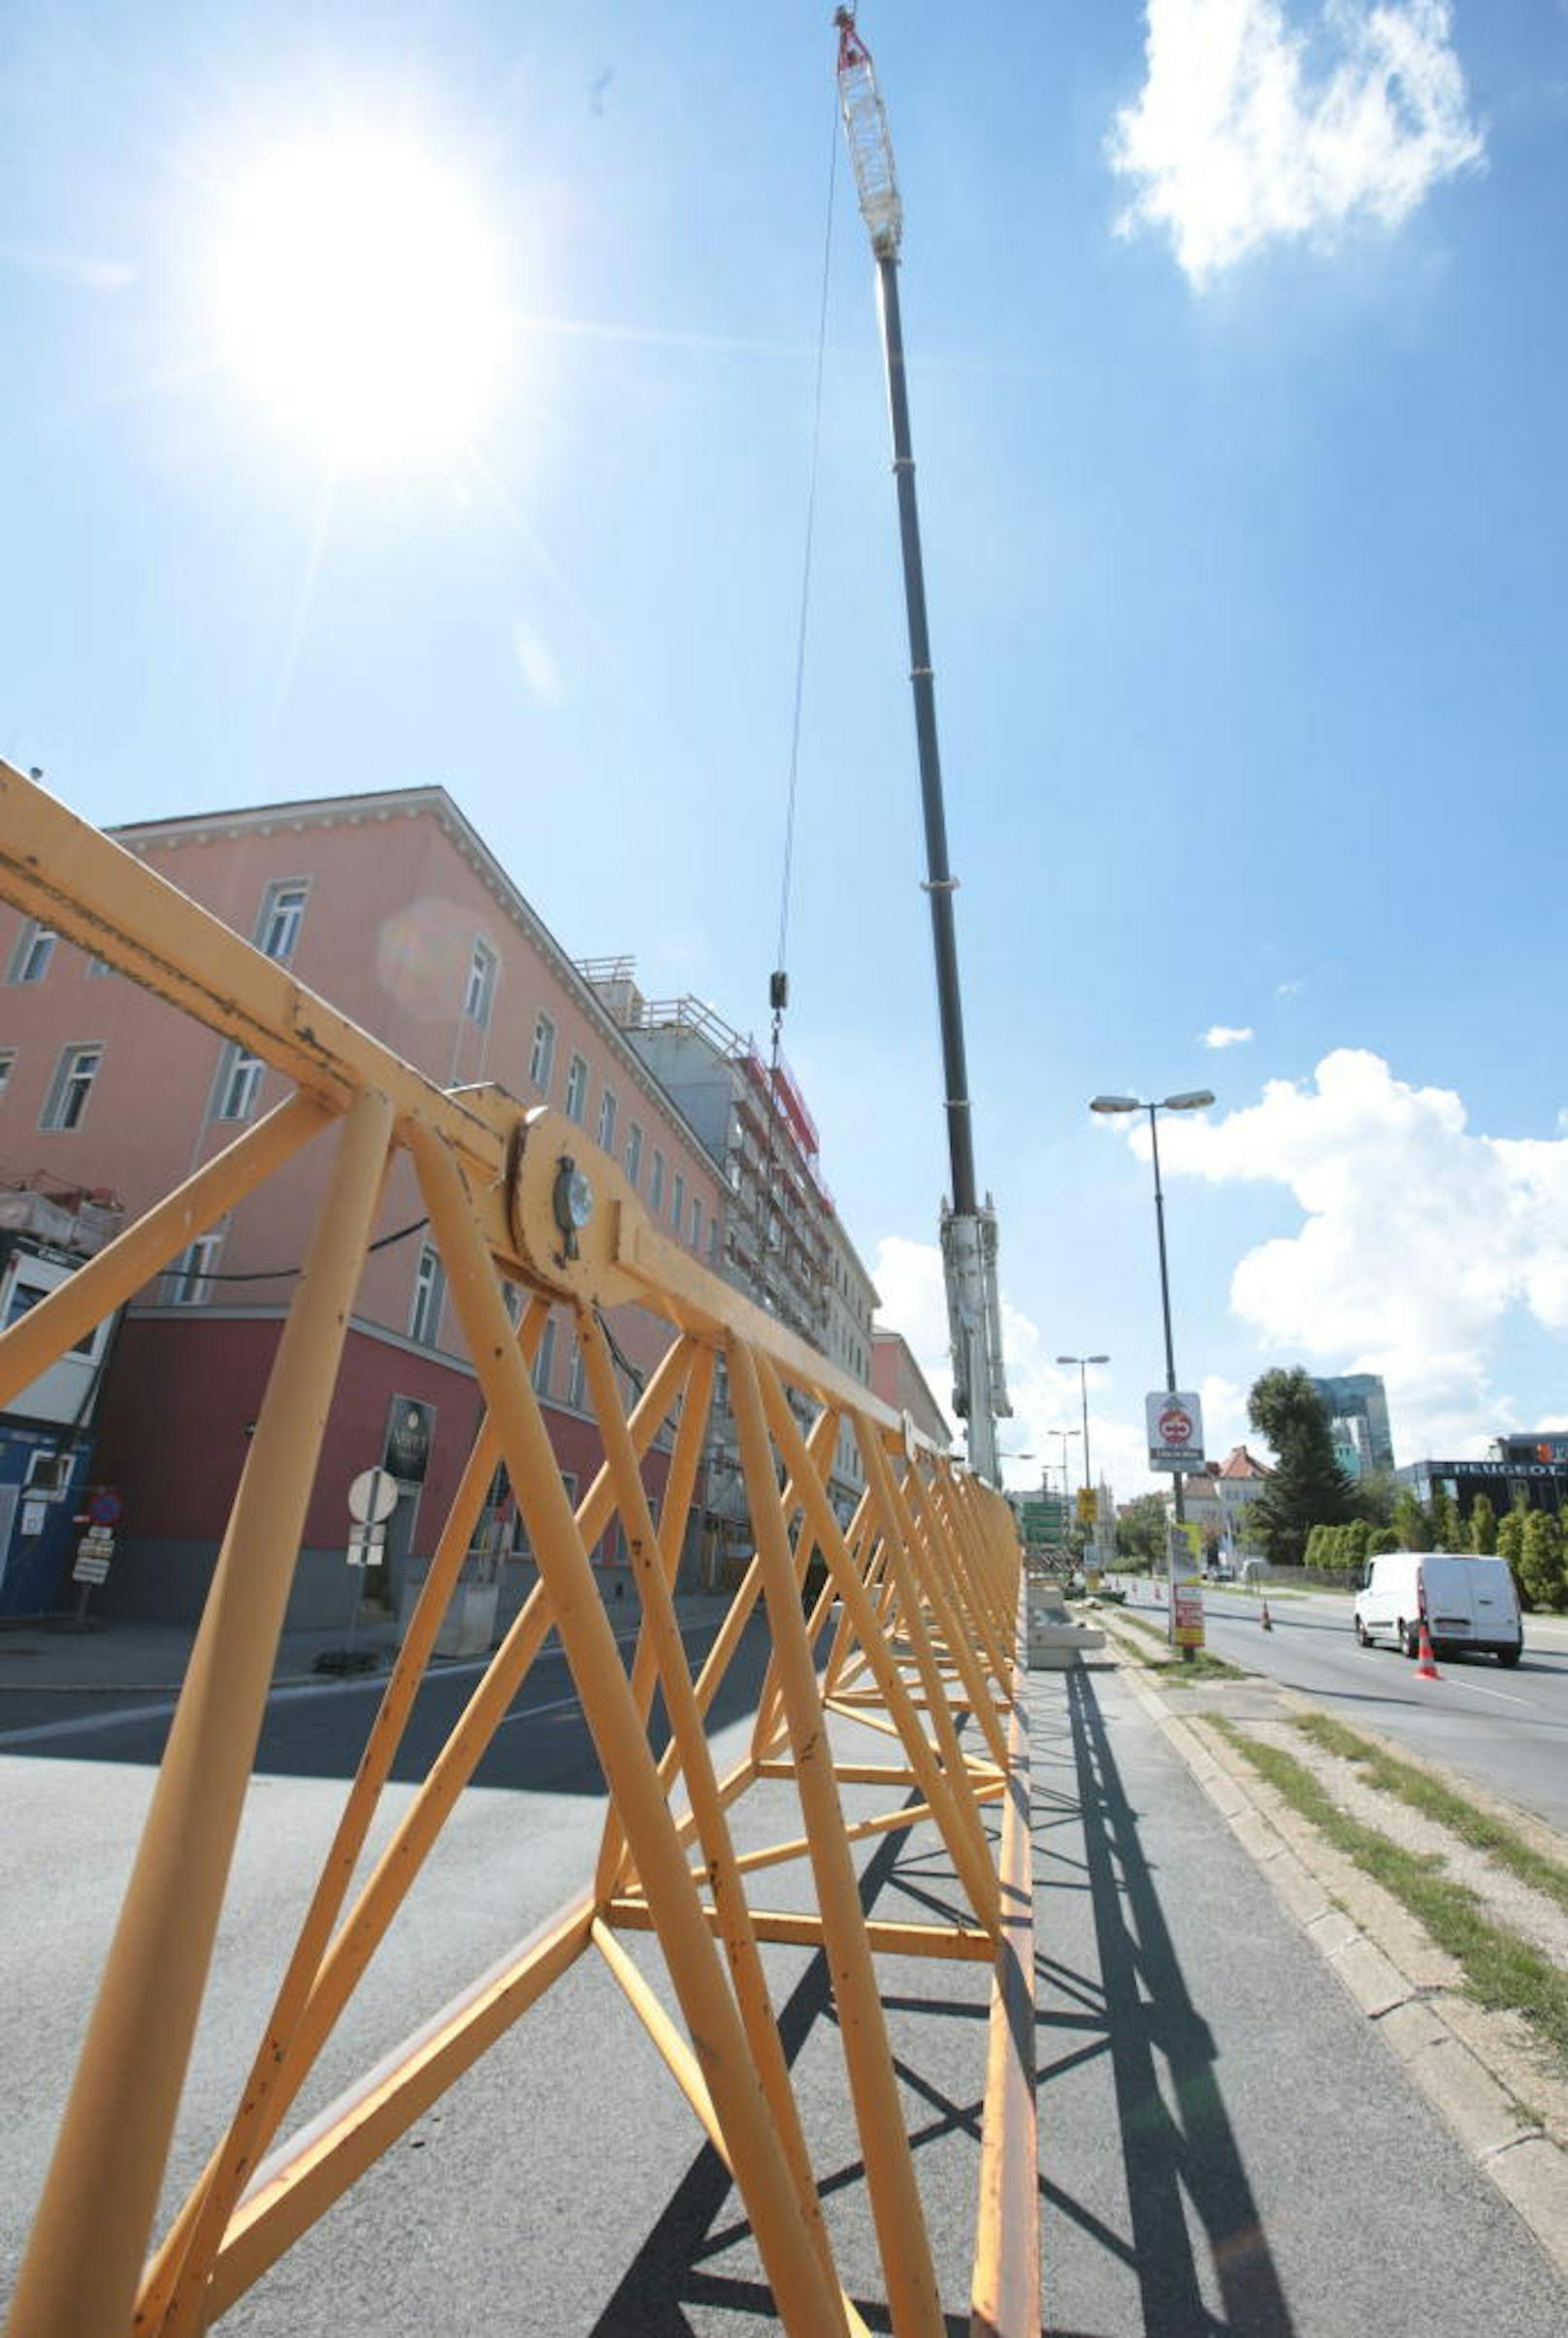 Auf der Triester Straße 69 wird am Montag ein Turmdrehkran aus einem Innenhof mit Hilfe eines 350 Tonnen-Mobilkrans abgebaut. Beide Fahrtrichtungen waren davon betroffen.